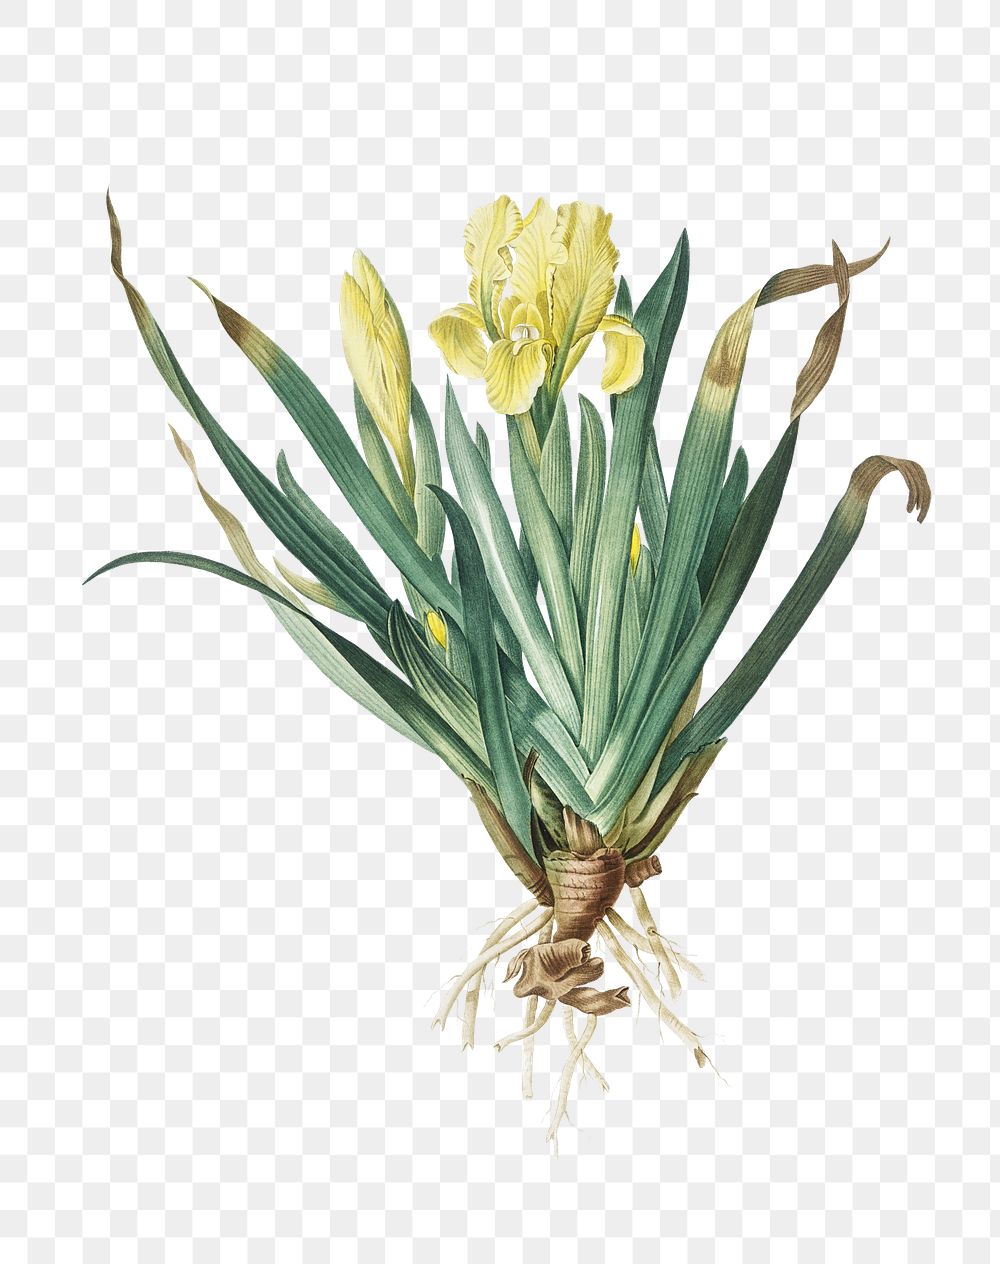 Crimean iris png sticker, vintage botanical illustration, transparent background